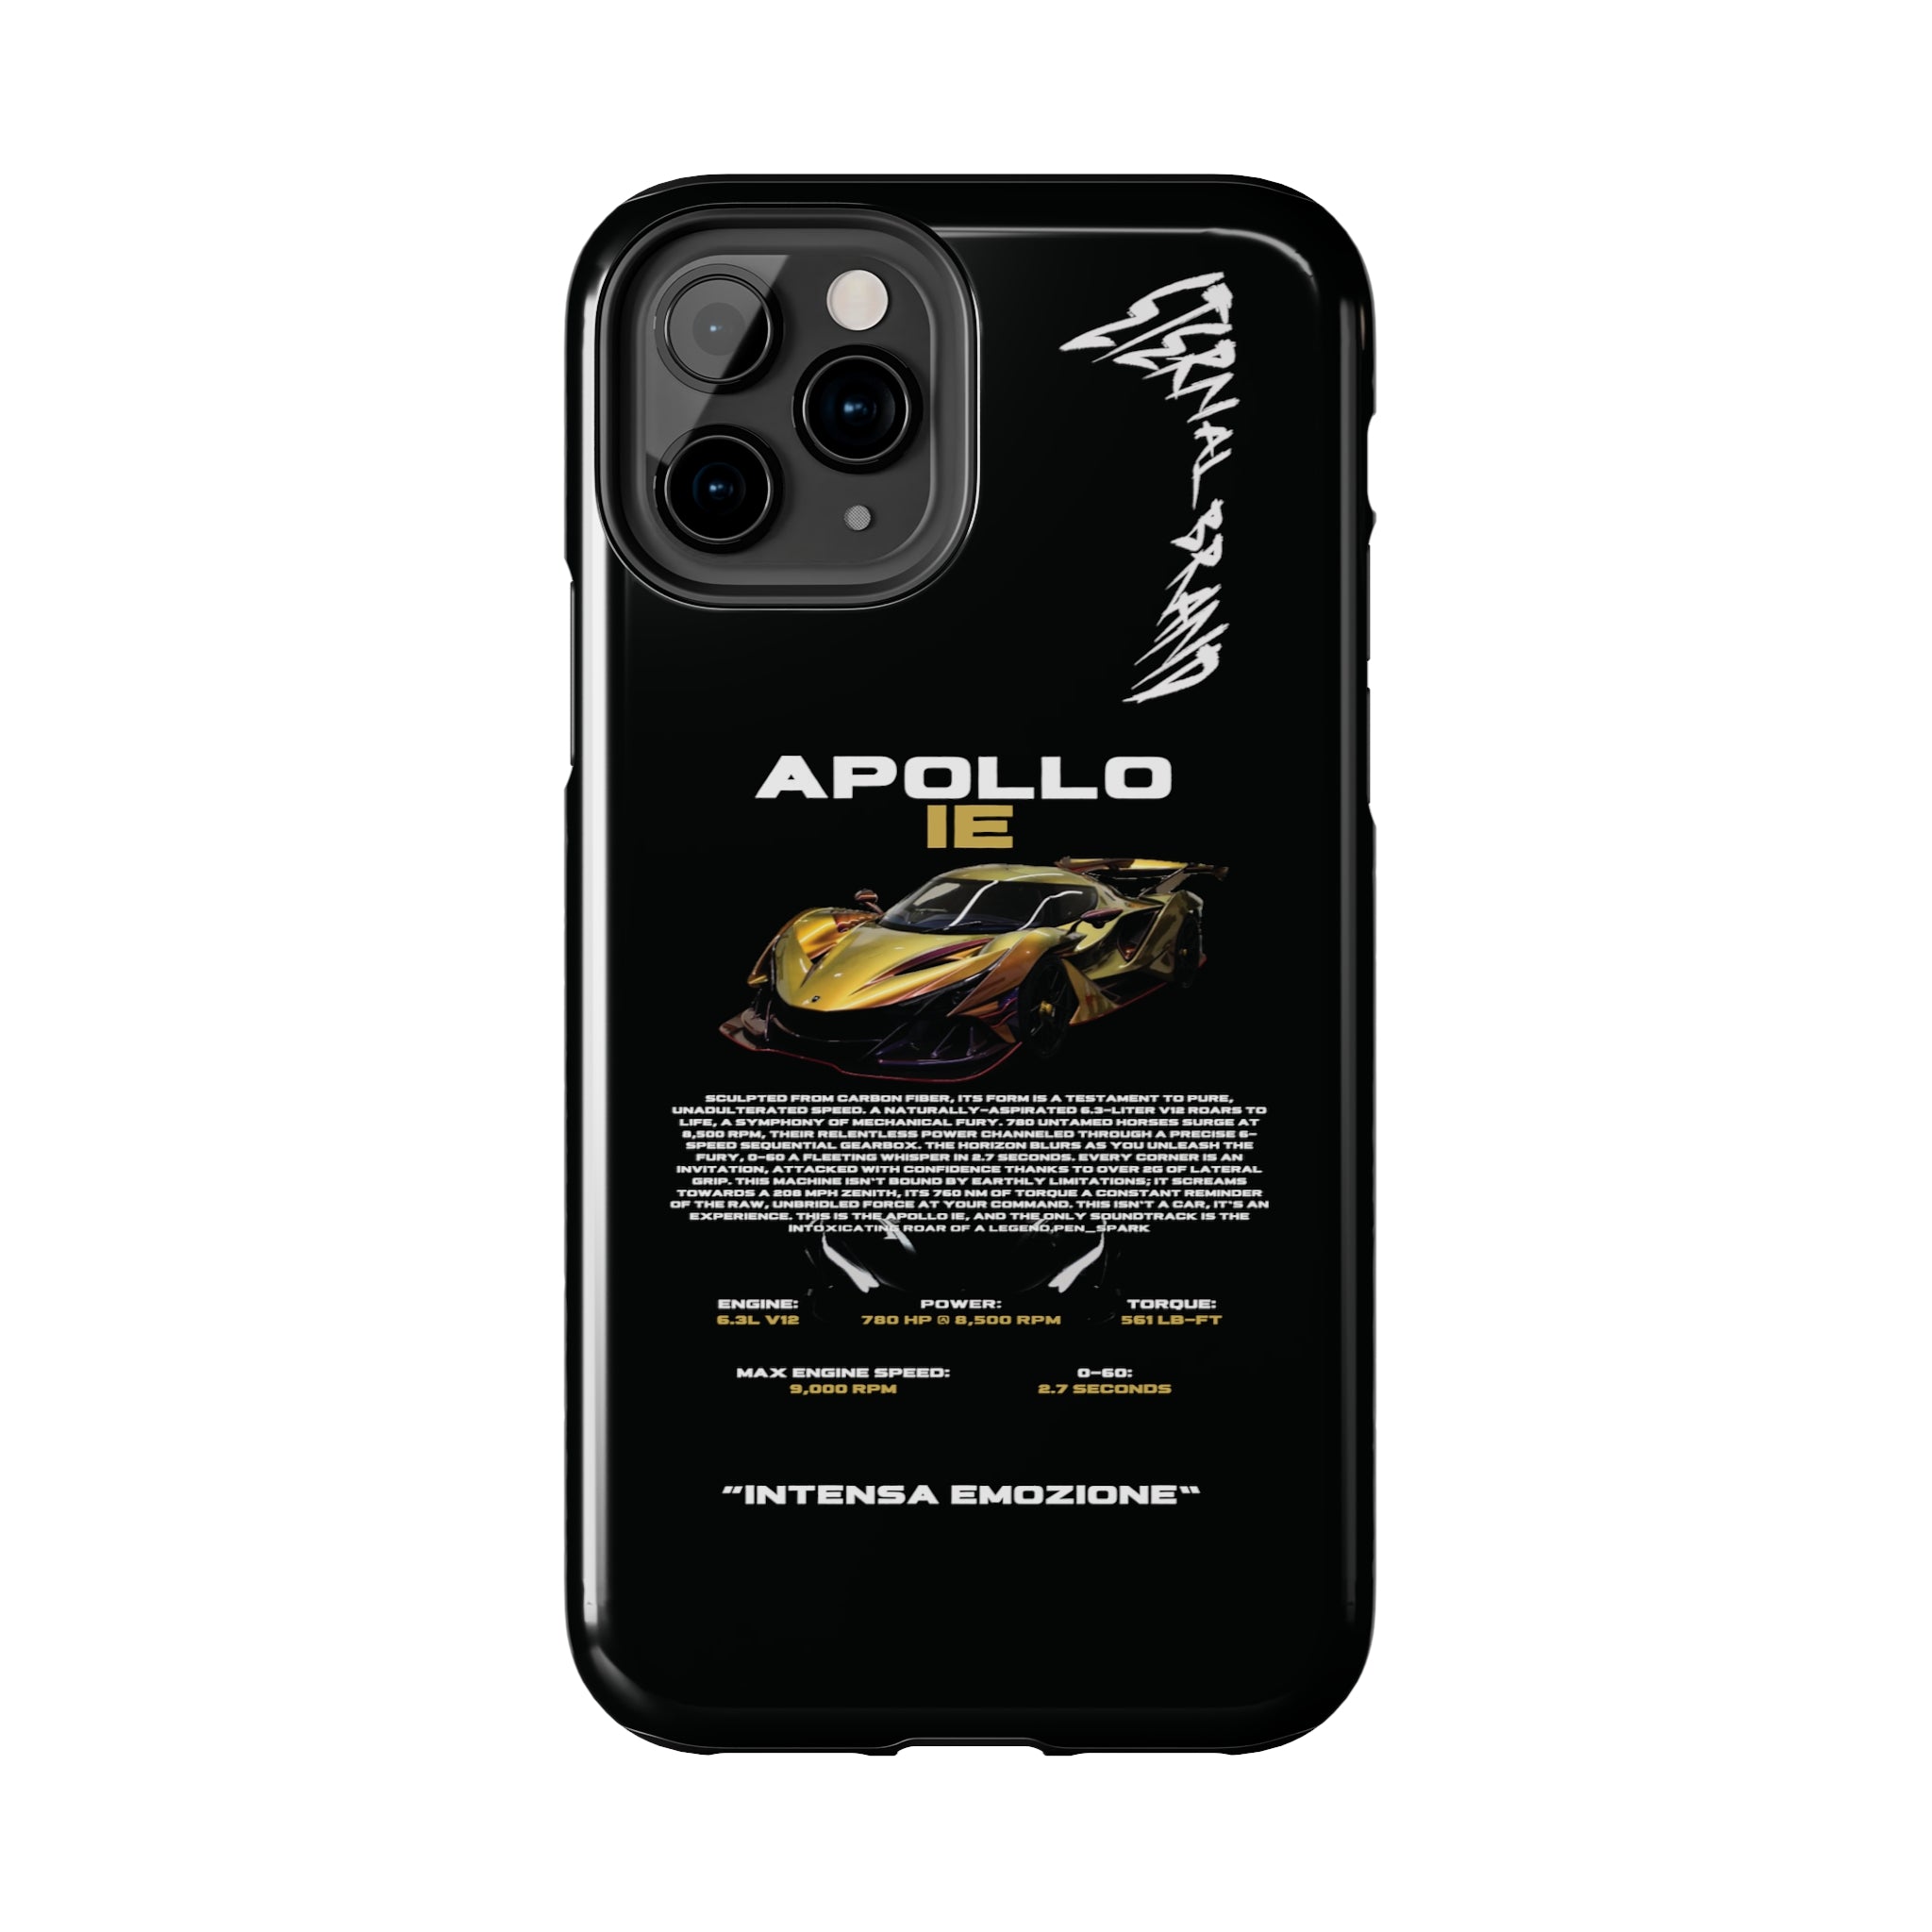 Apollo IE "Chameleon Carbon" "Noir"